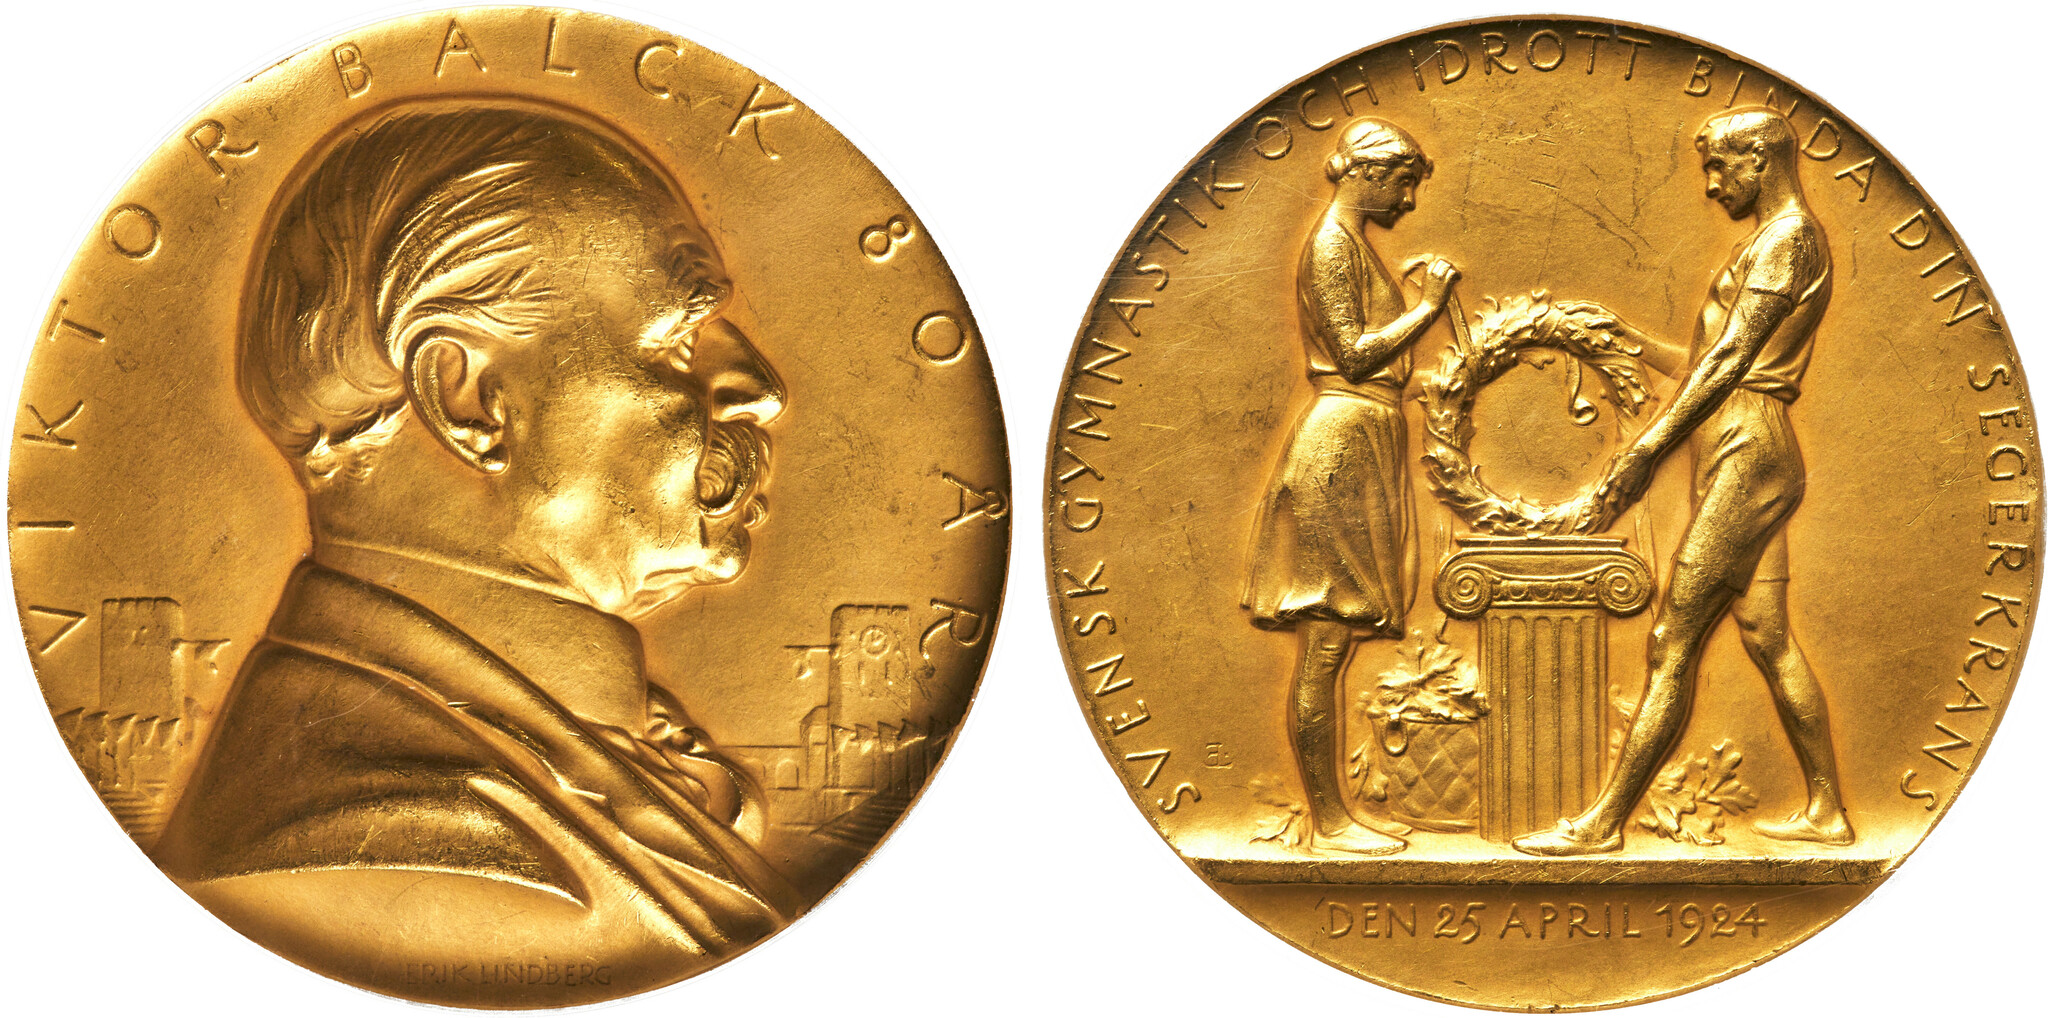 Victor Balck - Unik guldmedalj utdelad av kronprins Gustav Adolf Idrottens fader & ledamot i den första Internationella Olympiska Kommittén